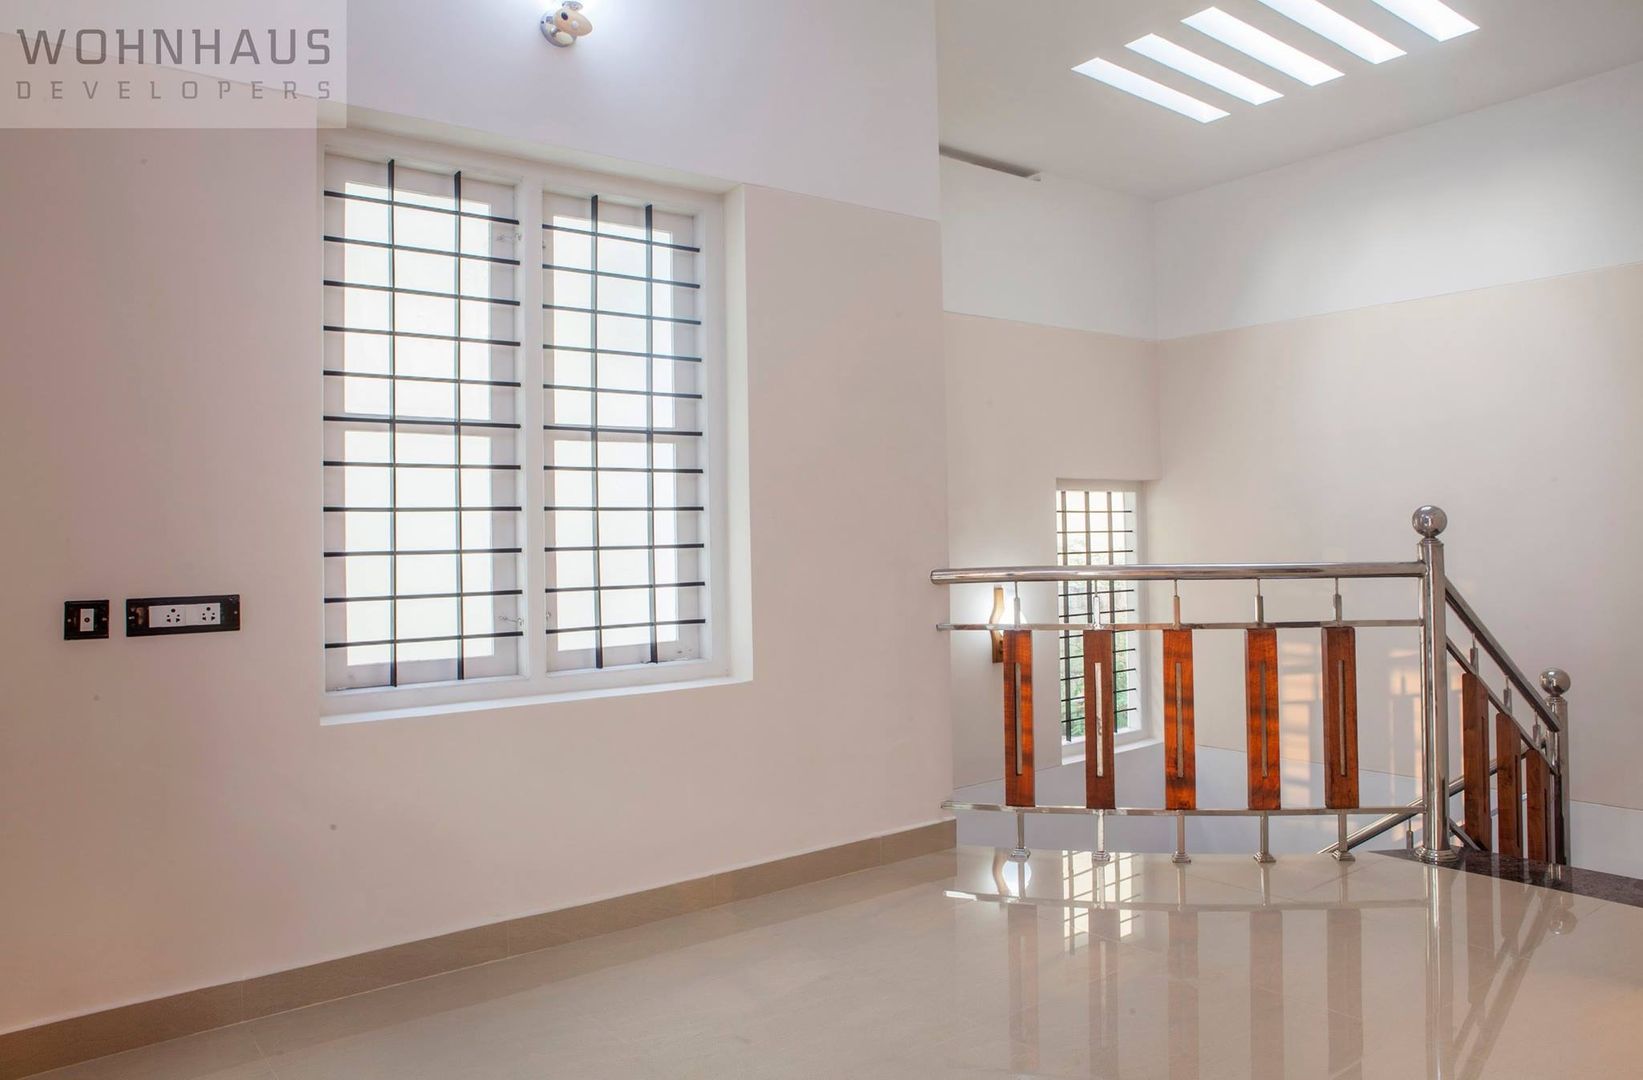 1400sqft House in Trivandrum, Wohnhaus Developers Wohnhaus Developers Pasillos, vestíbulos y escaleras modernos Cerámico